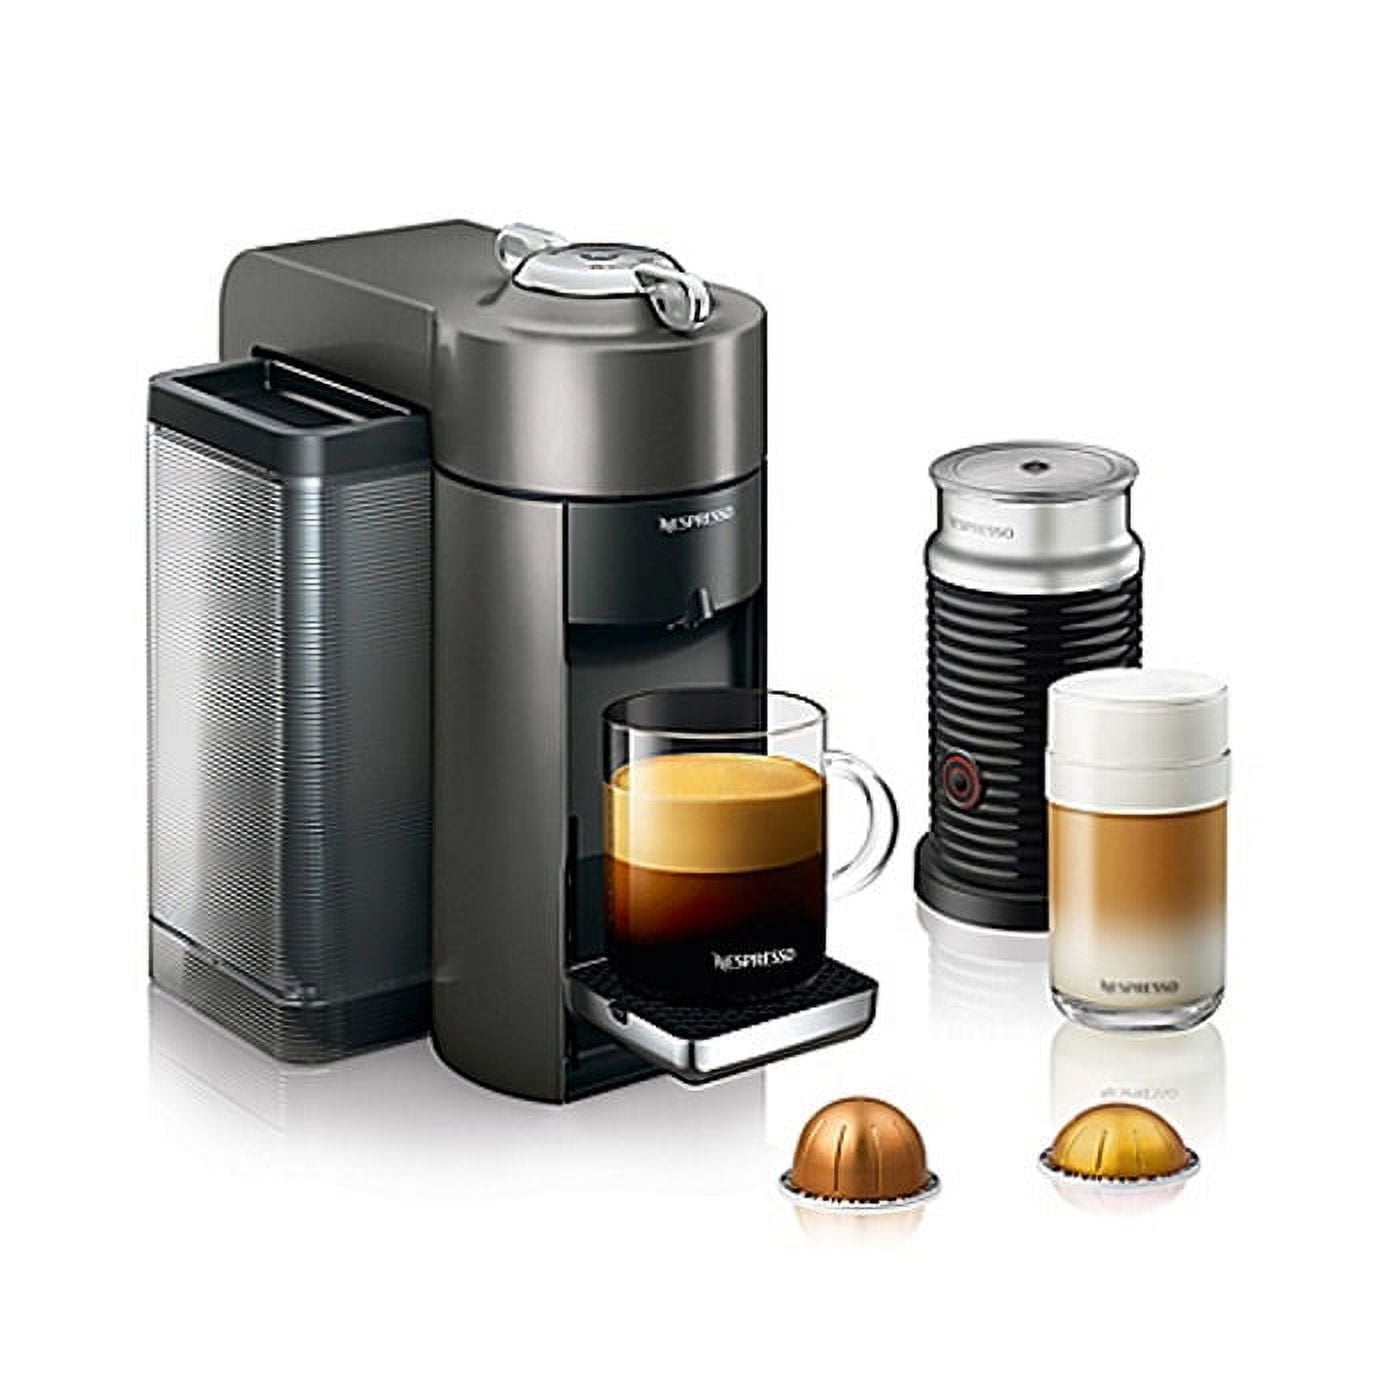 Nespresso Vertuo Pop+ Coffee Maker and Espresso Machine - Gray